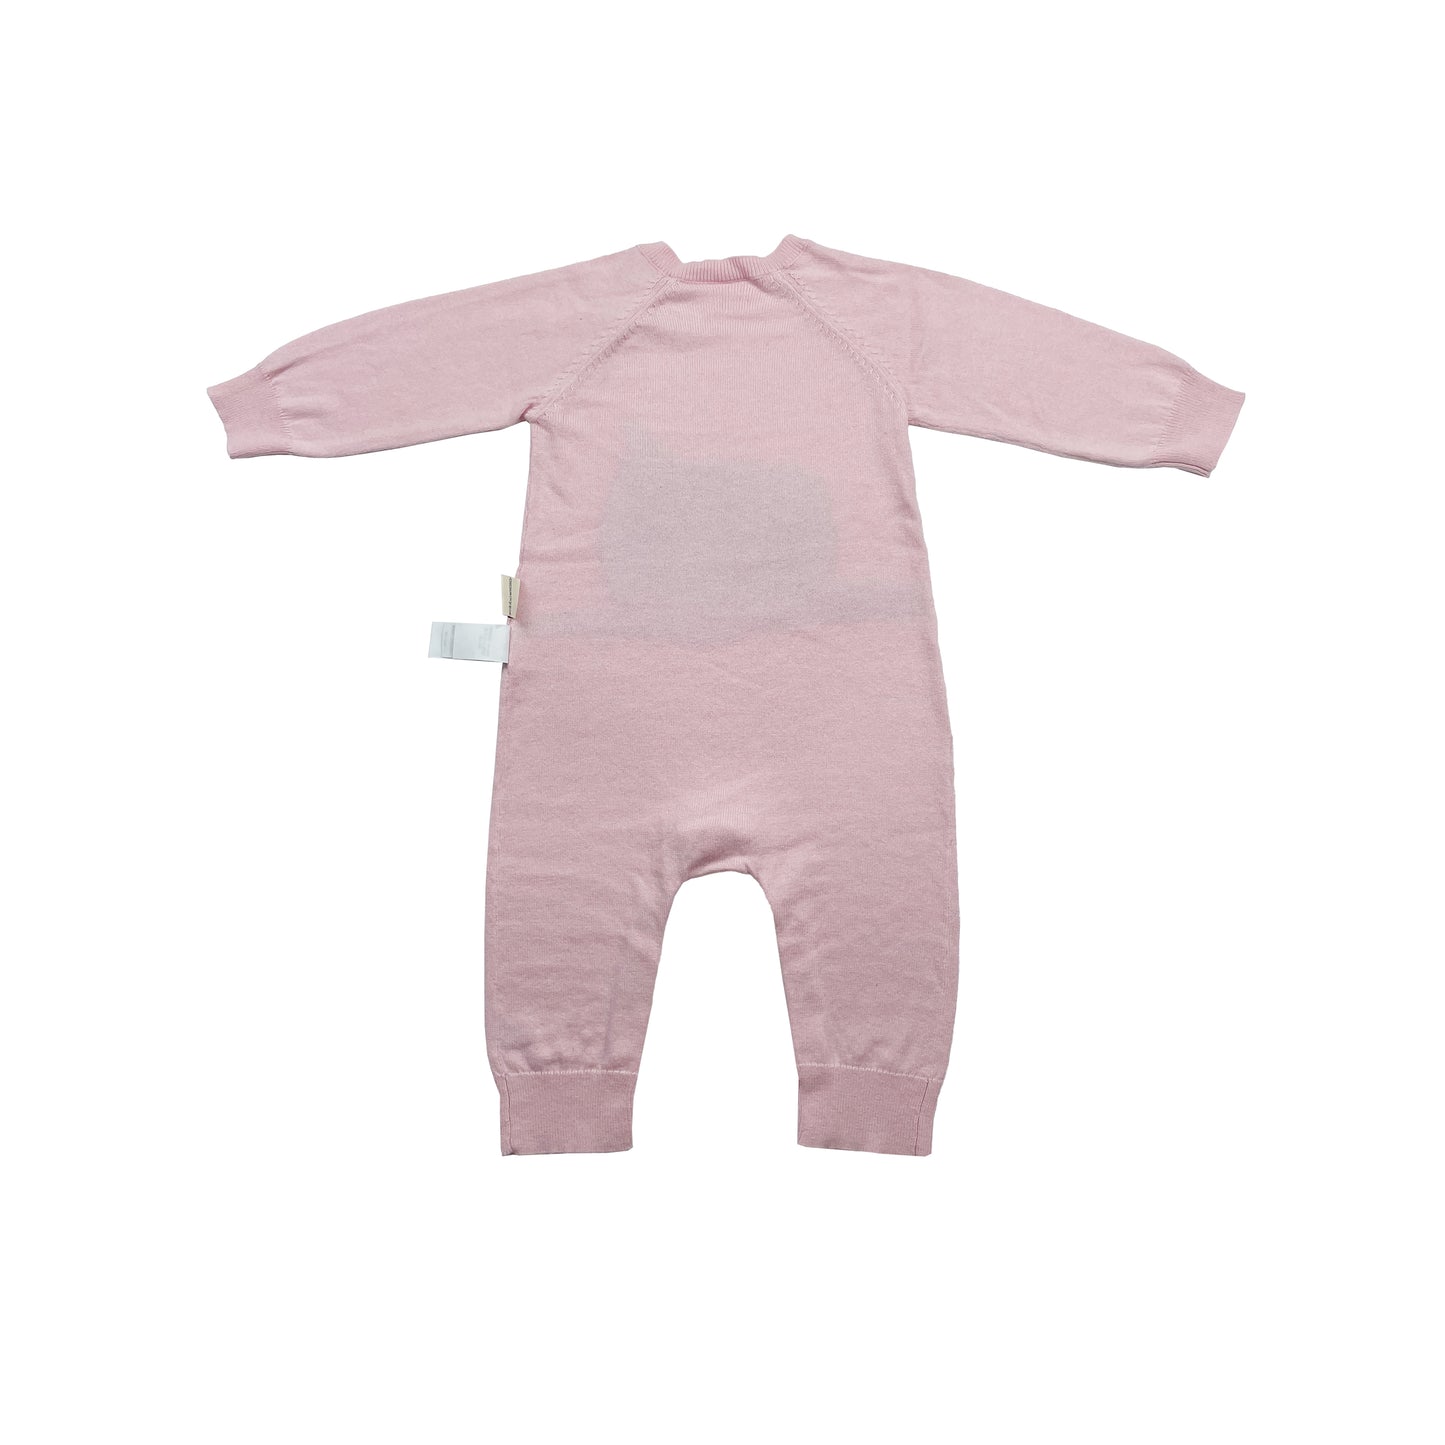 嬰兒衣服 - 粉紅色猫頭鷹圖案羊絨混棉連身衣